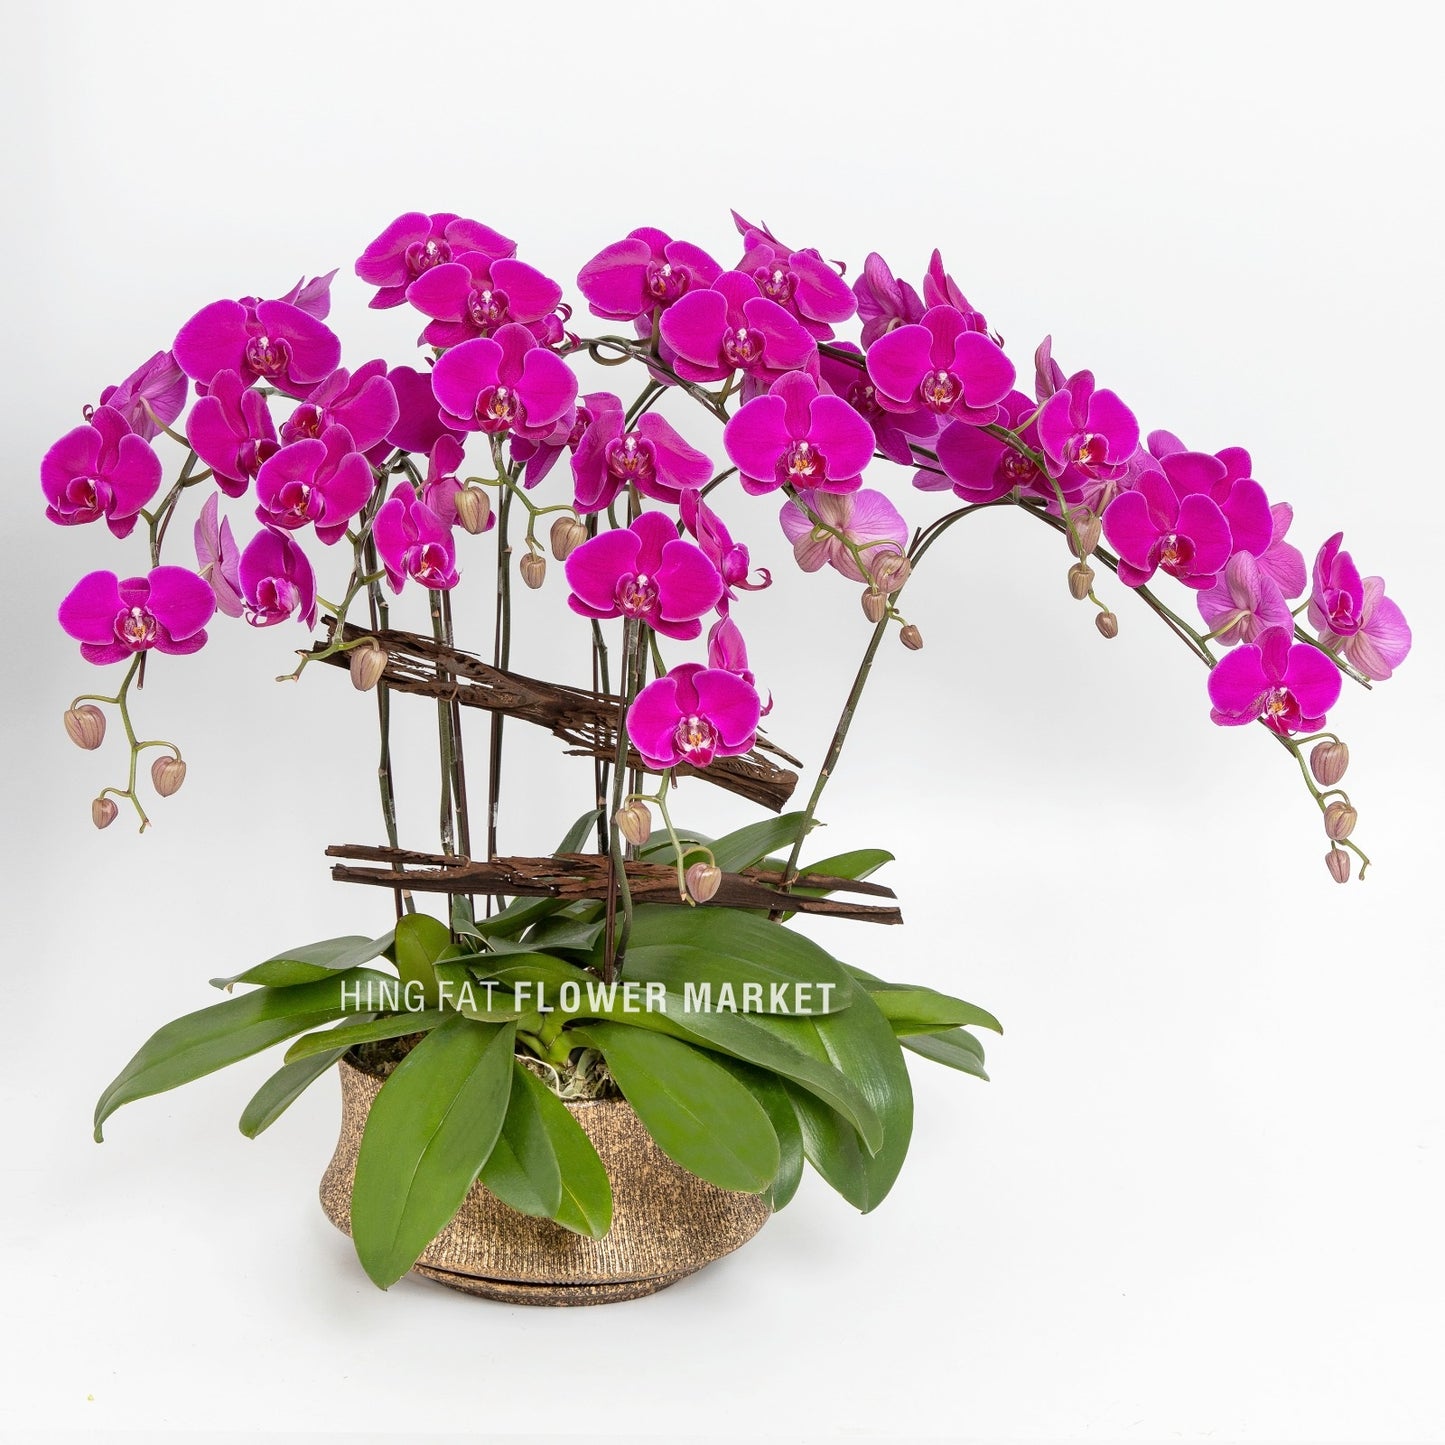 8菖紫蝴蝶蘭 Purple orchids (8 stems)